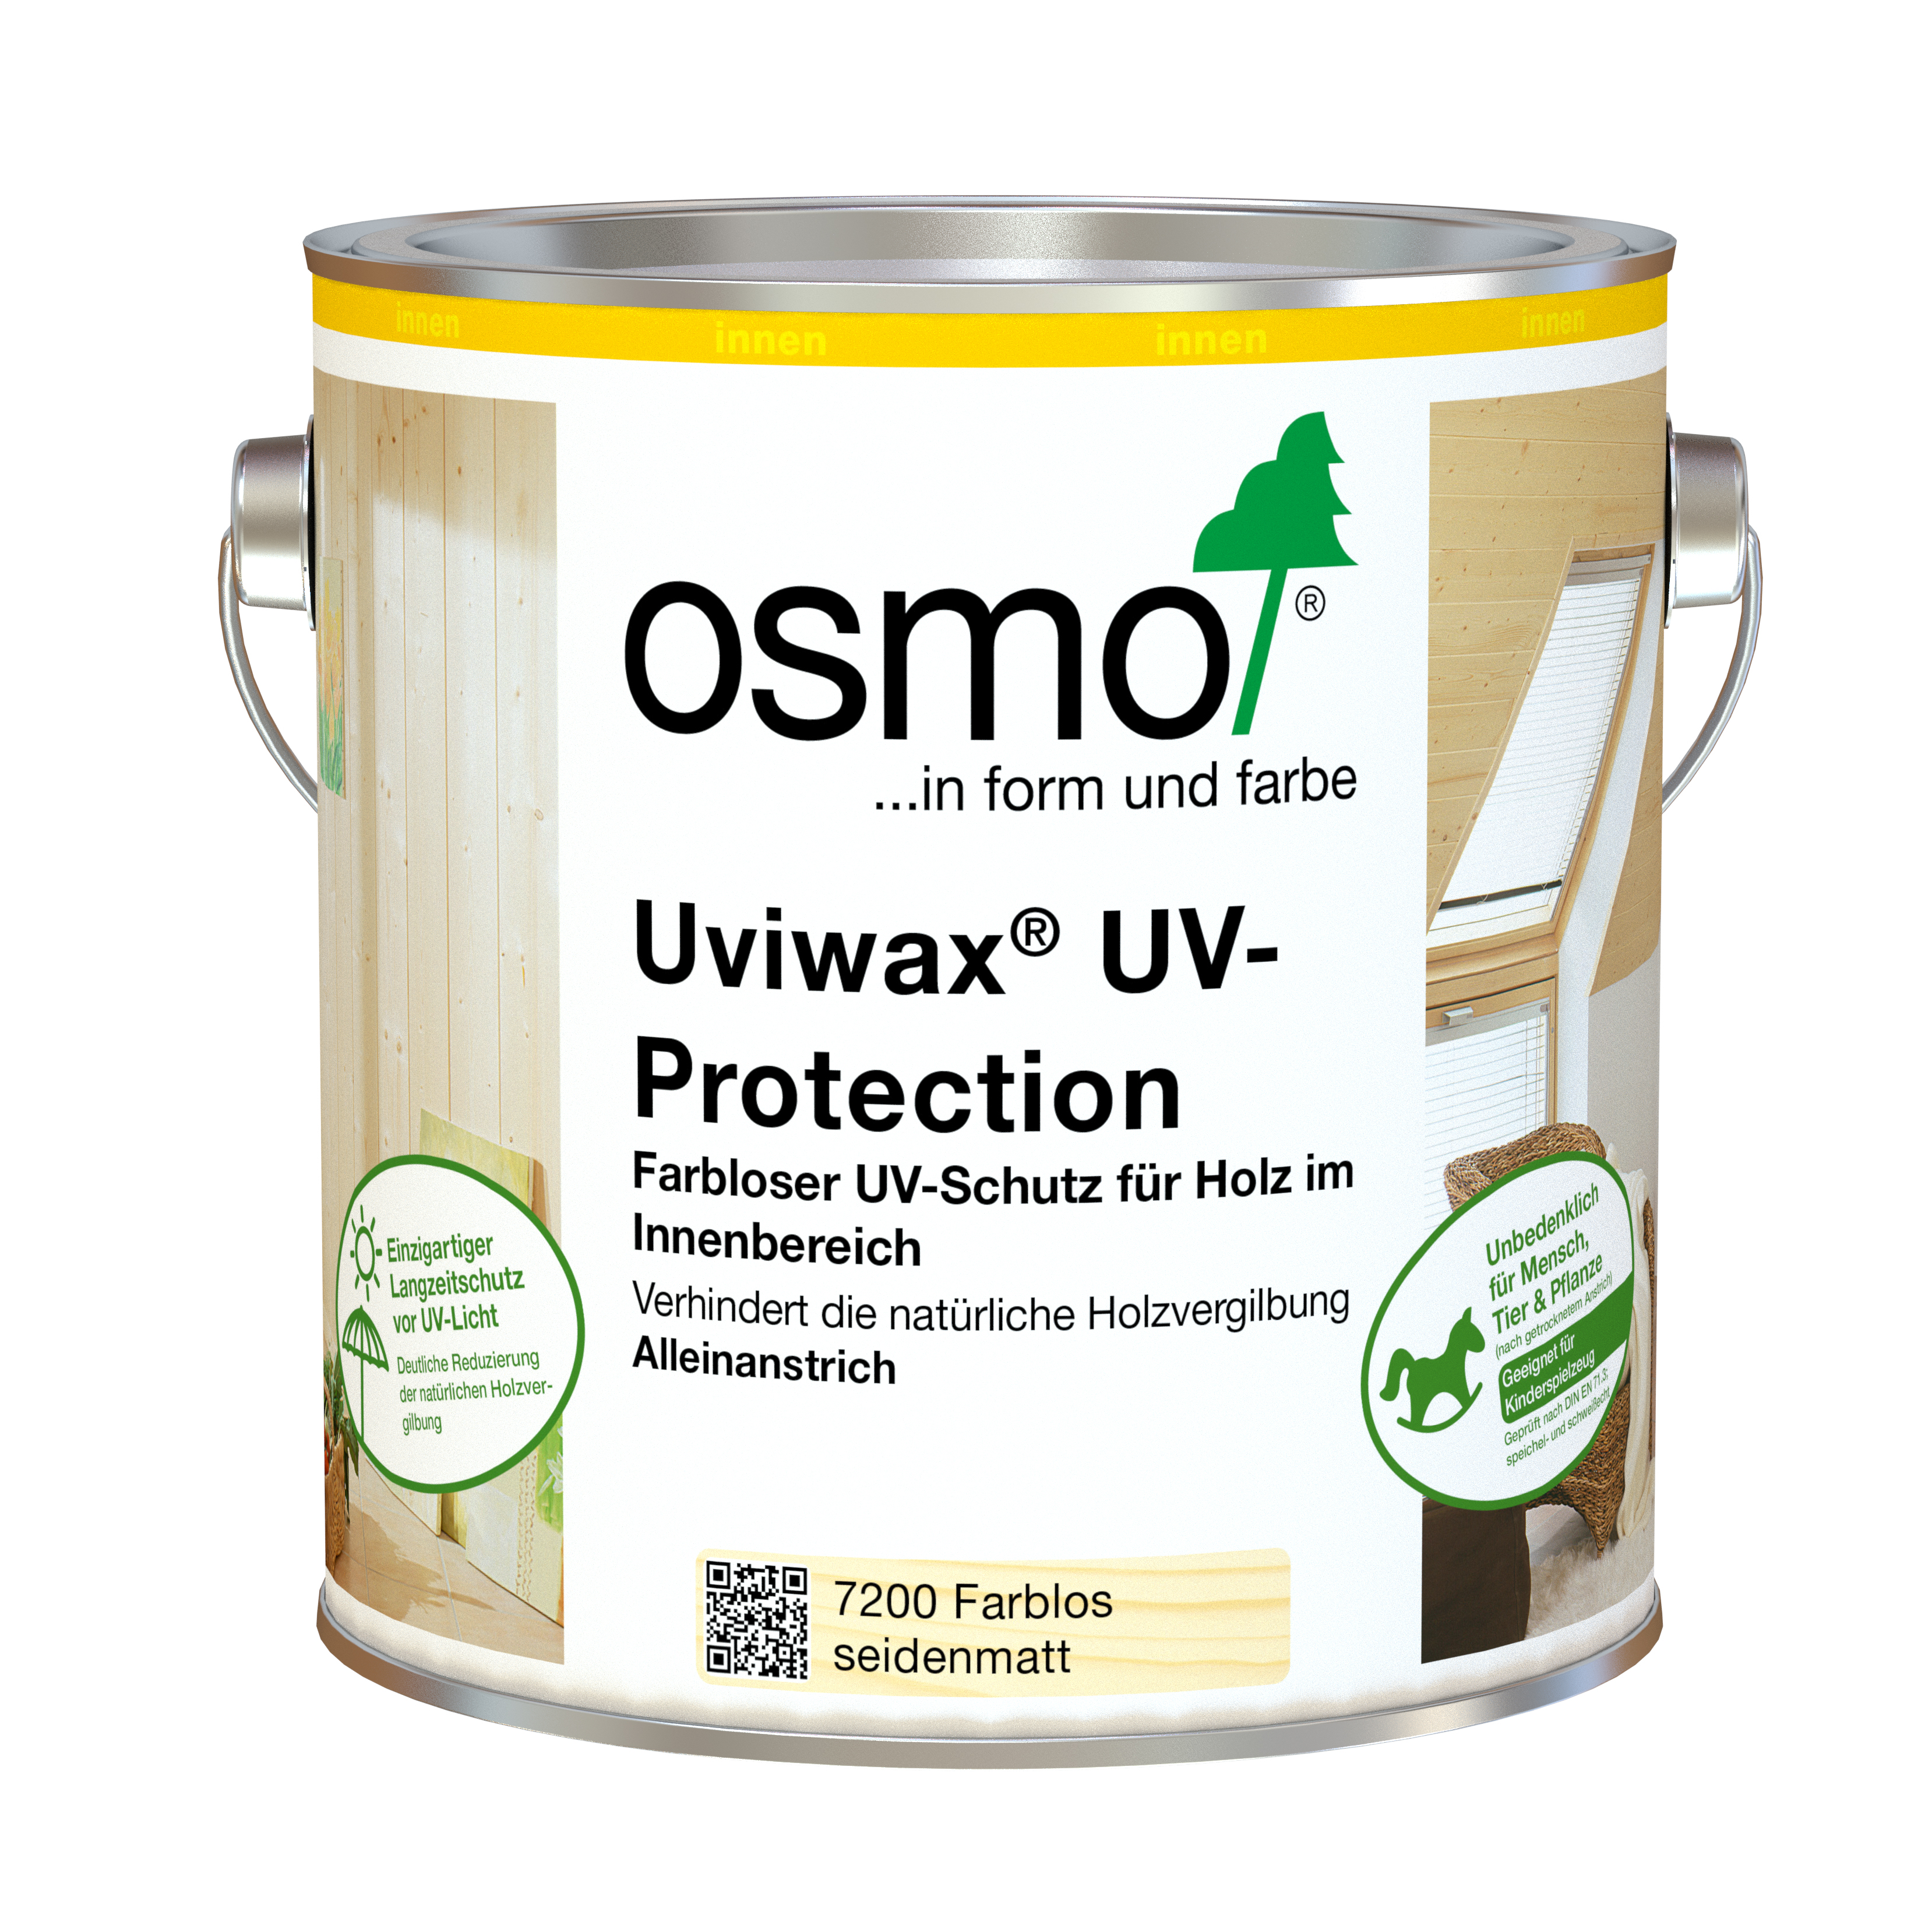 OSMO Uviwax UV-Protection 